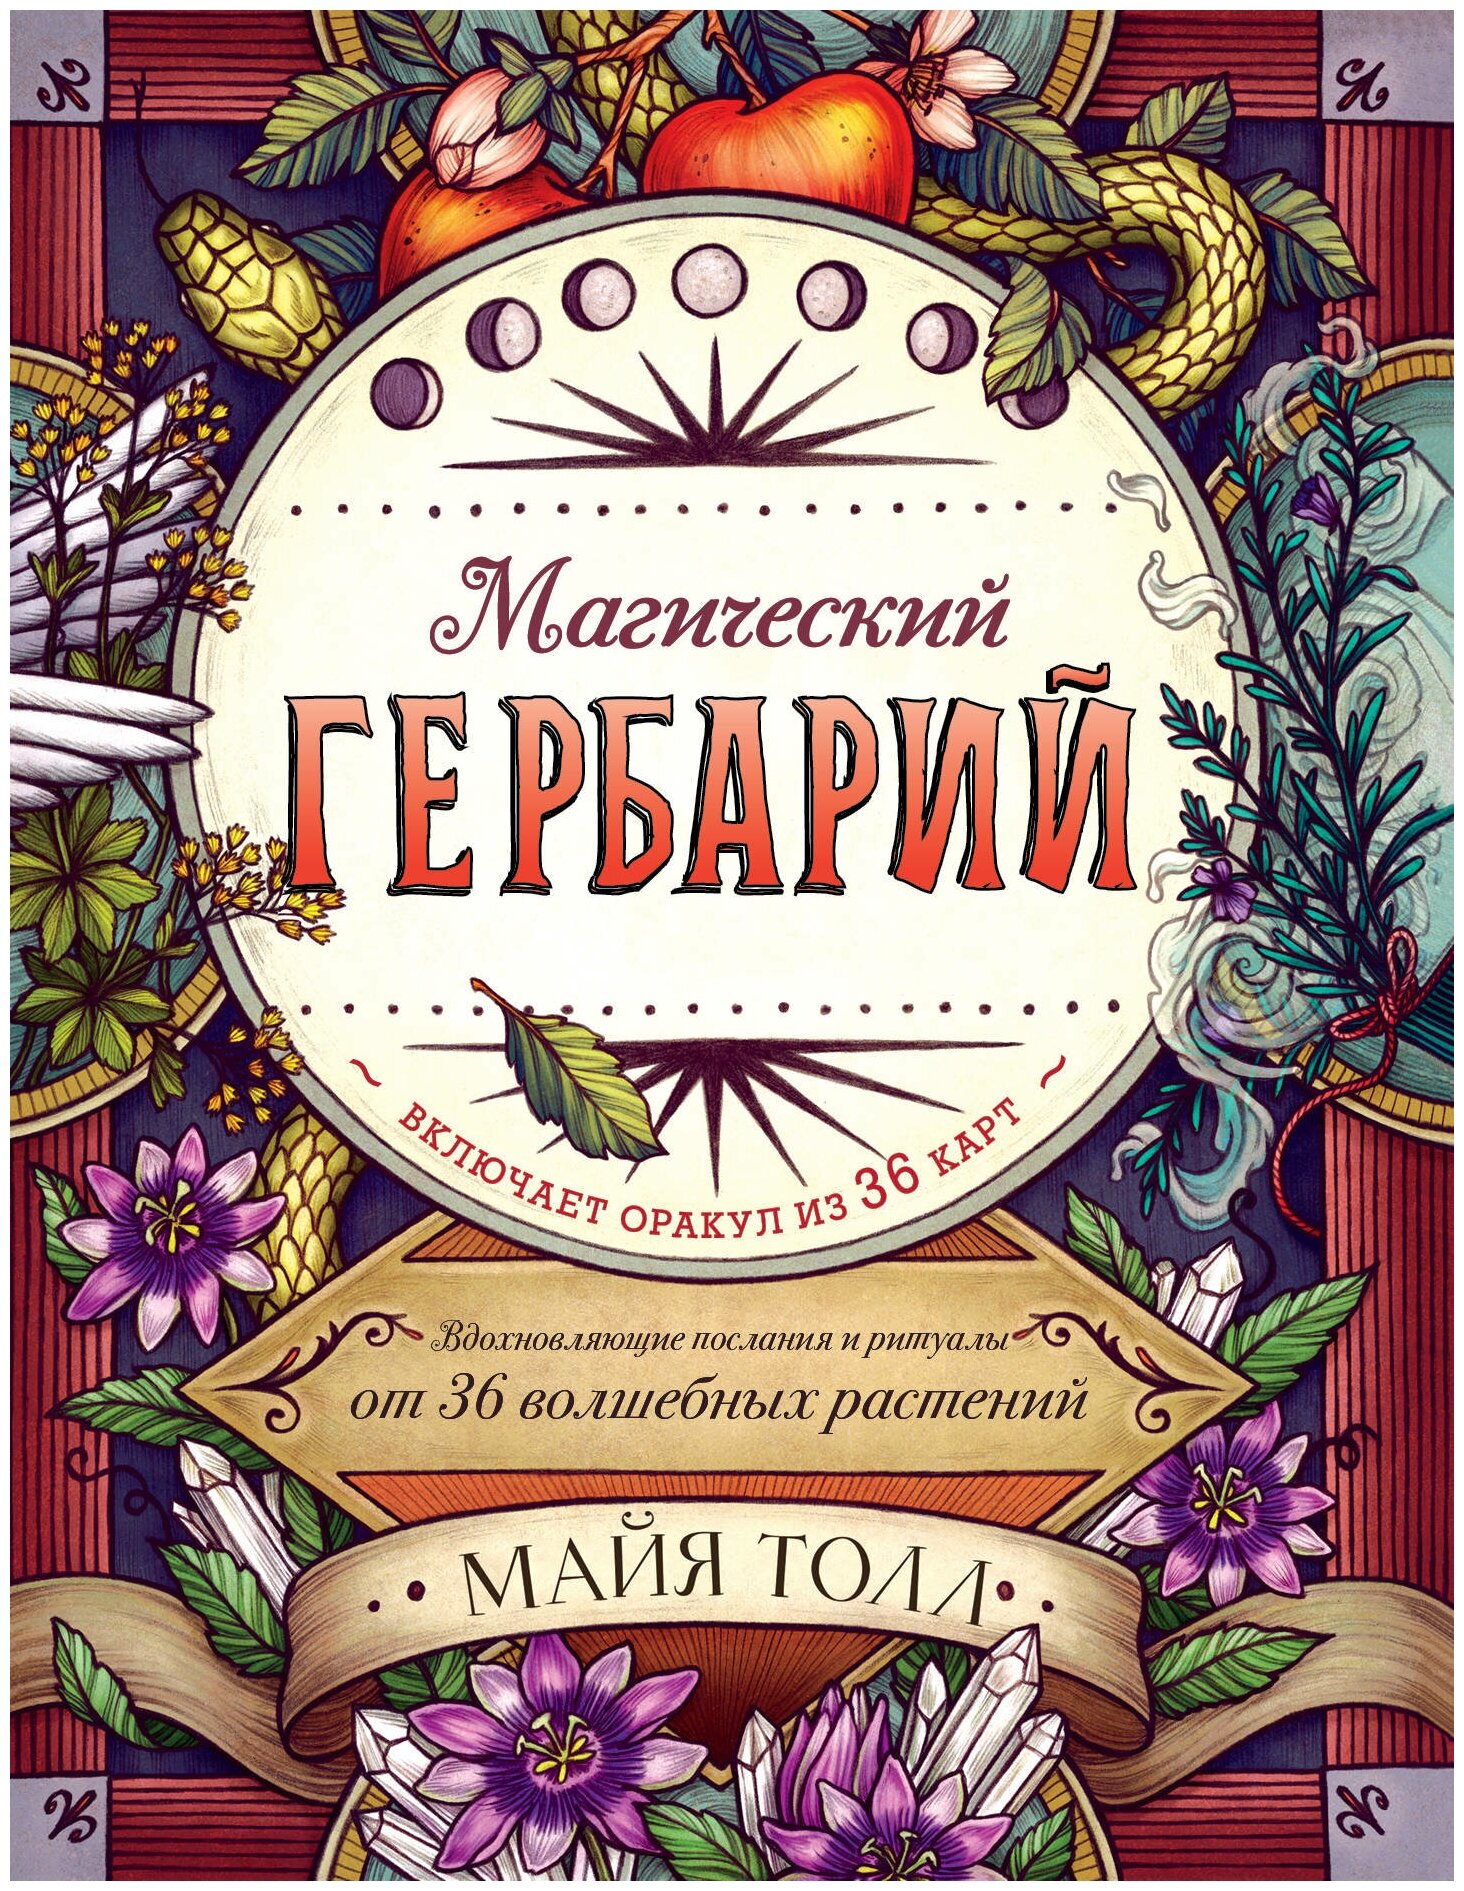 Толл М. "Магический гербарий. Вдохновляющие послания и ритуалы от 36 волшебных растений (книга-оракул и 36 карт для гадания)"